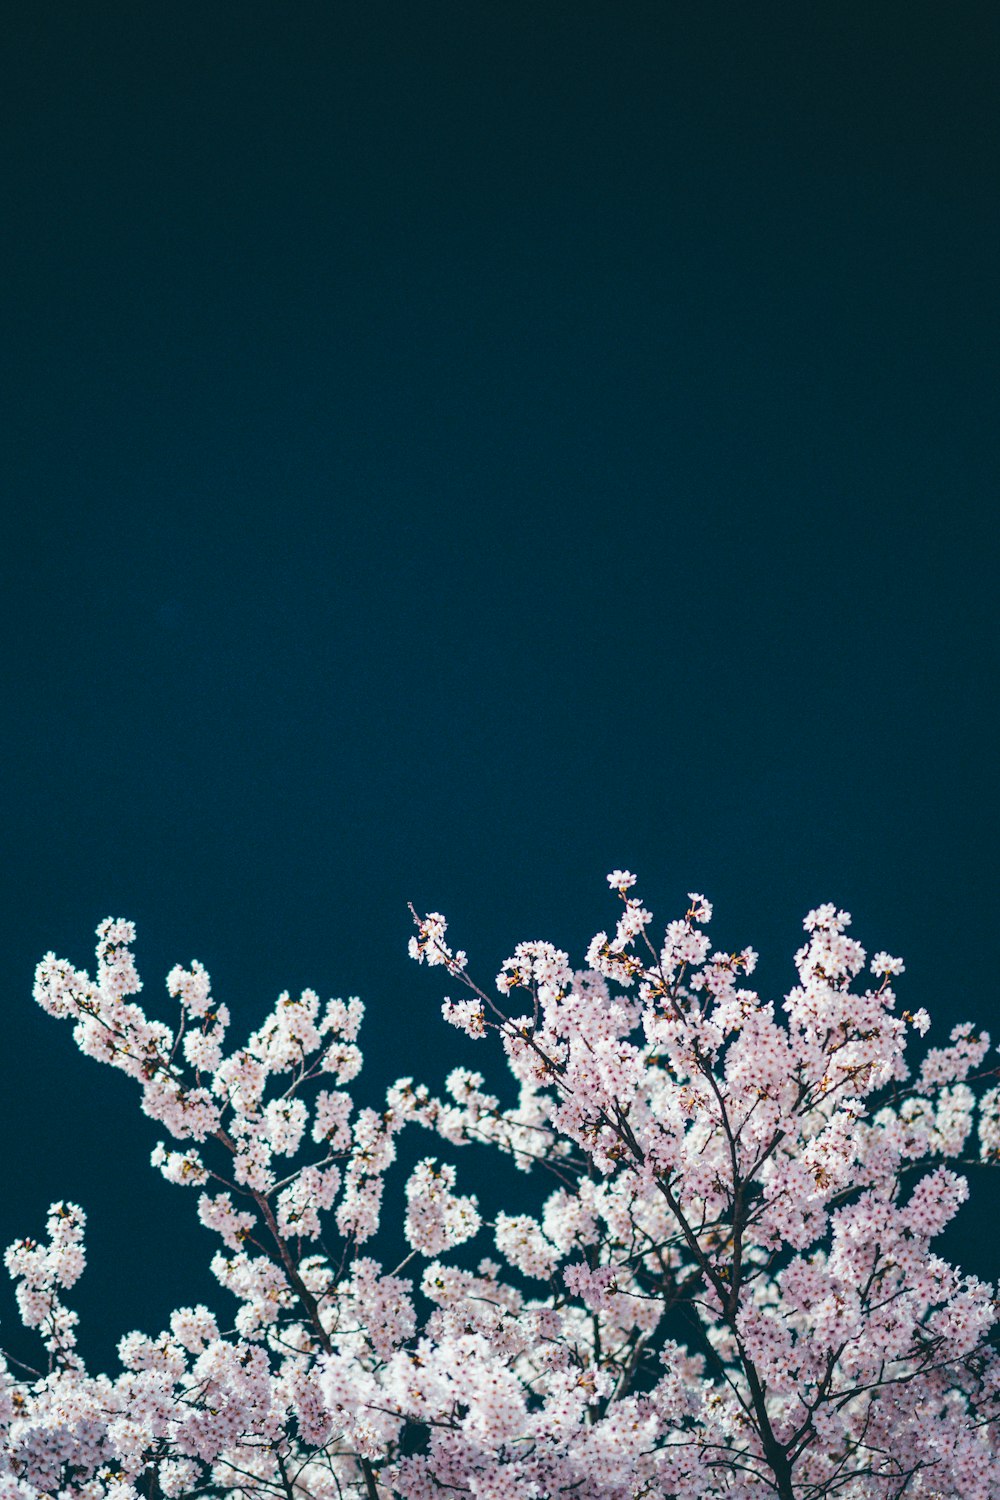 albero di ciliegio bianco in fiore durante la notte